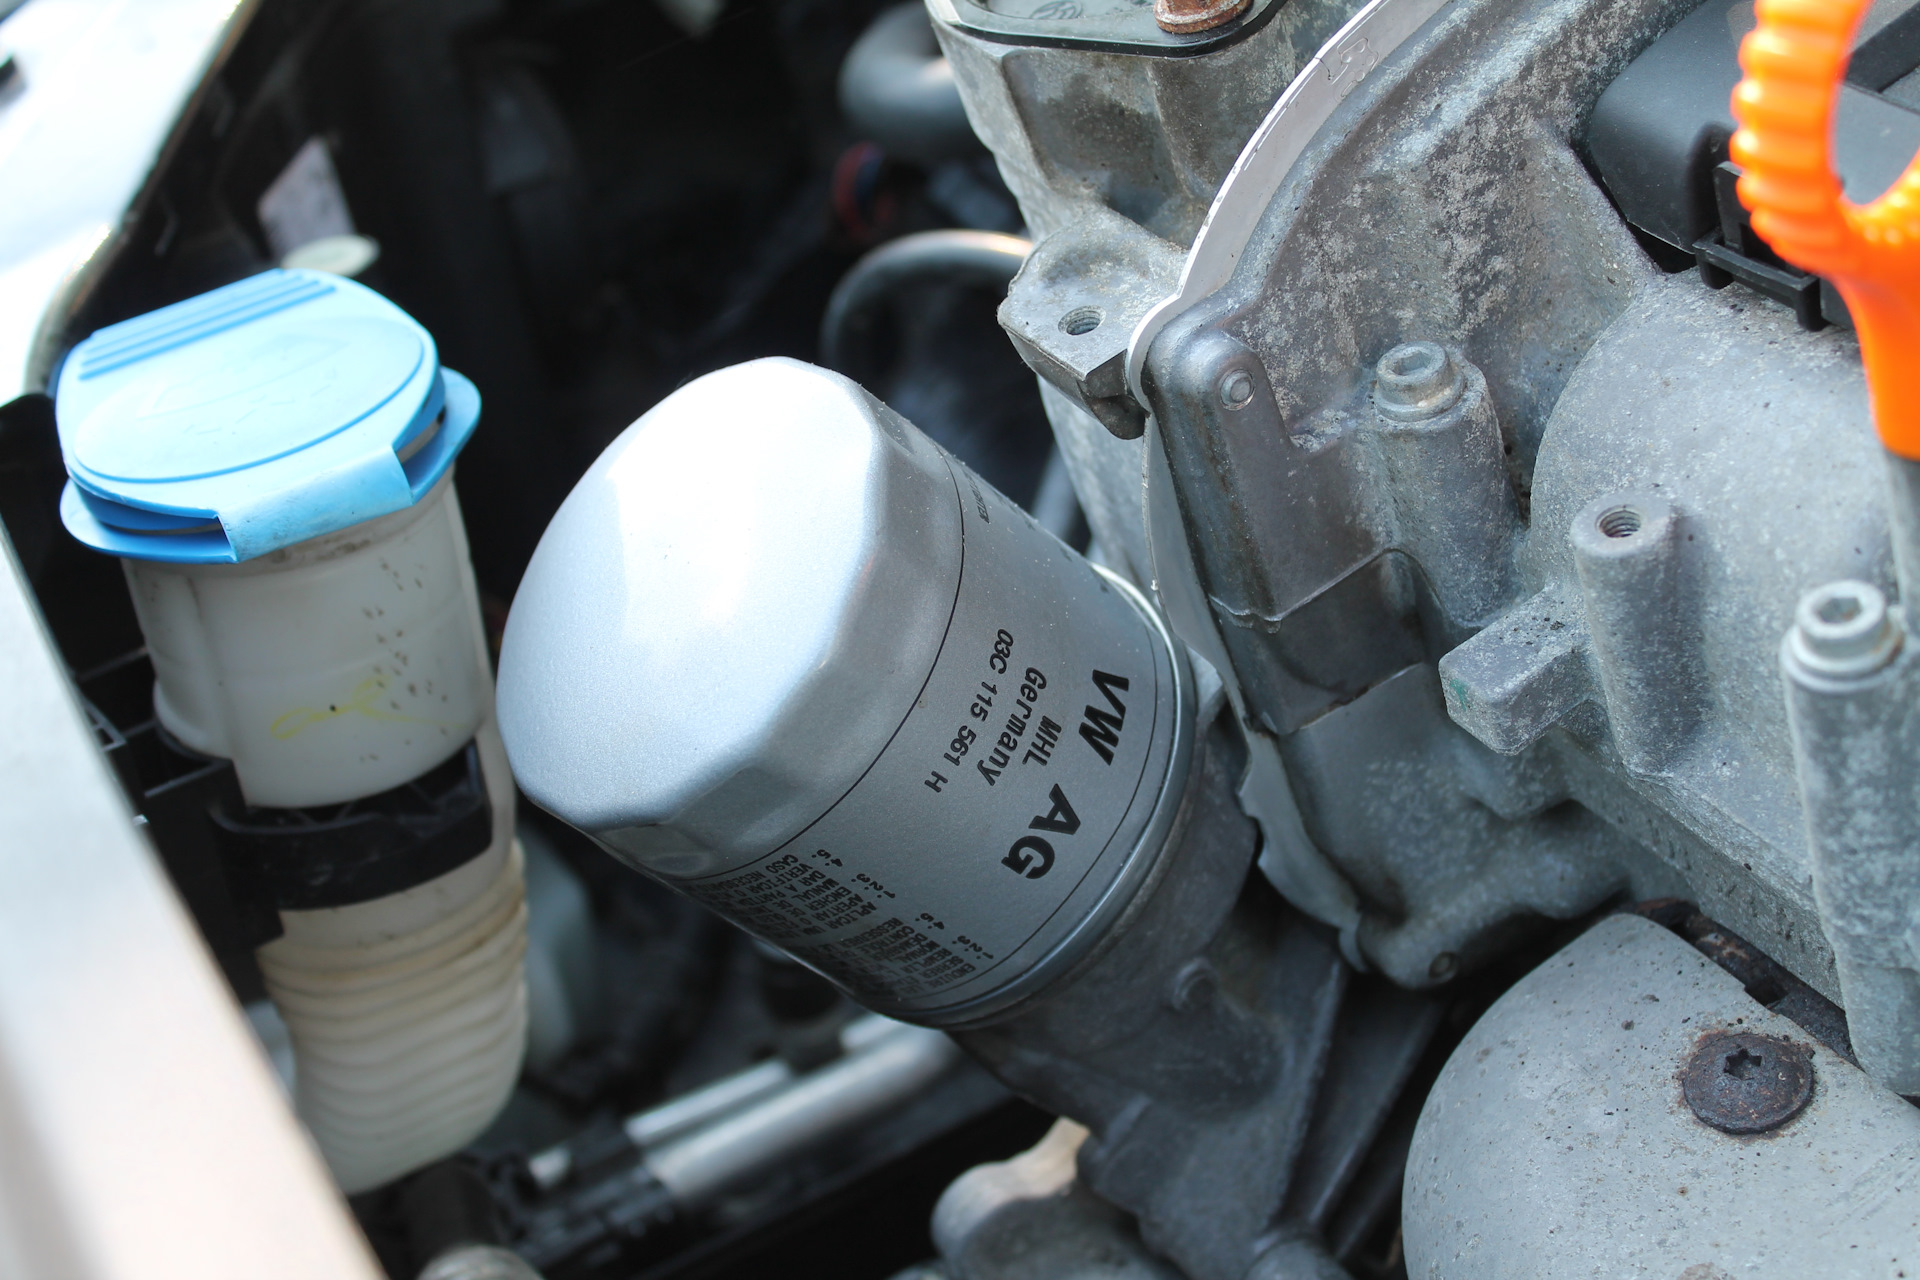 Сколько масла в двигателе поло седан. Фольксваген поло масляный фильтр в моторе. Замена масла Фольксваген поло седан 1.6. Фильтр масляный Фольксваген поло седан 1.6 110 л.с. VW Polo 2010 1.6 моторное масло.